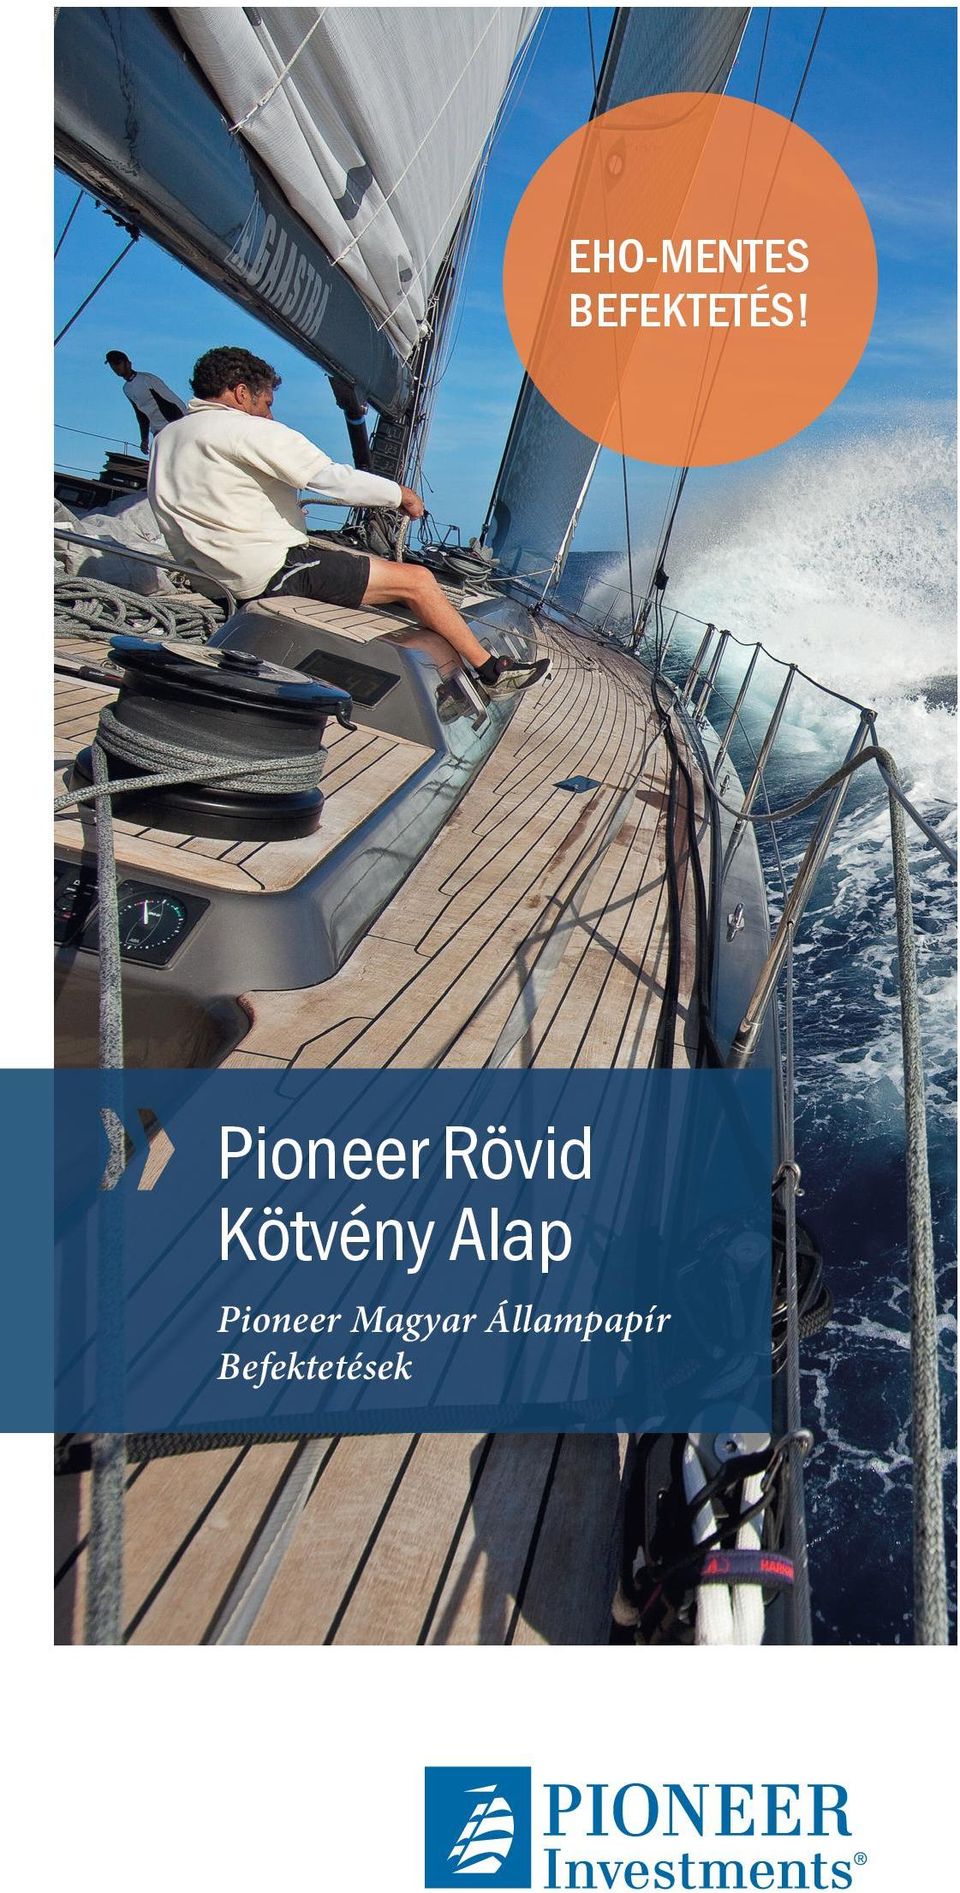 Alap Pioneer Magyar